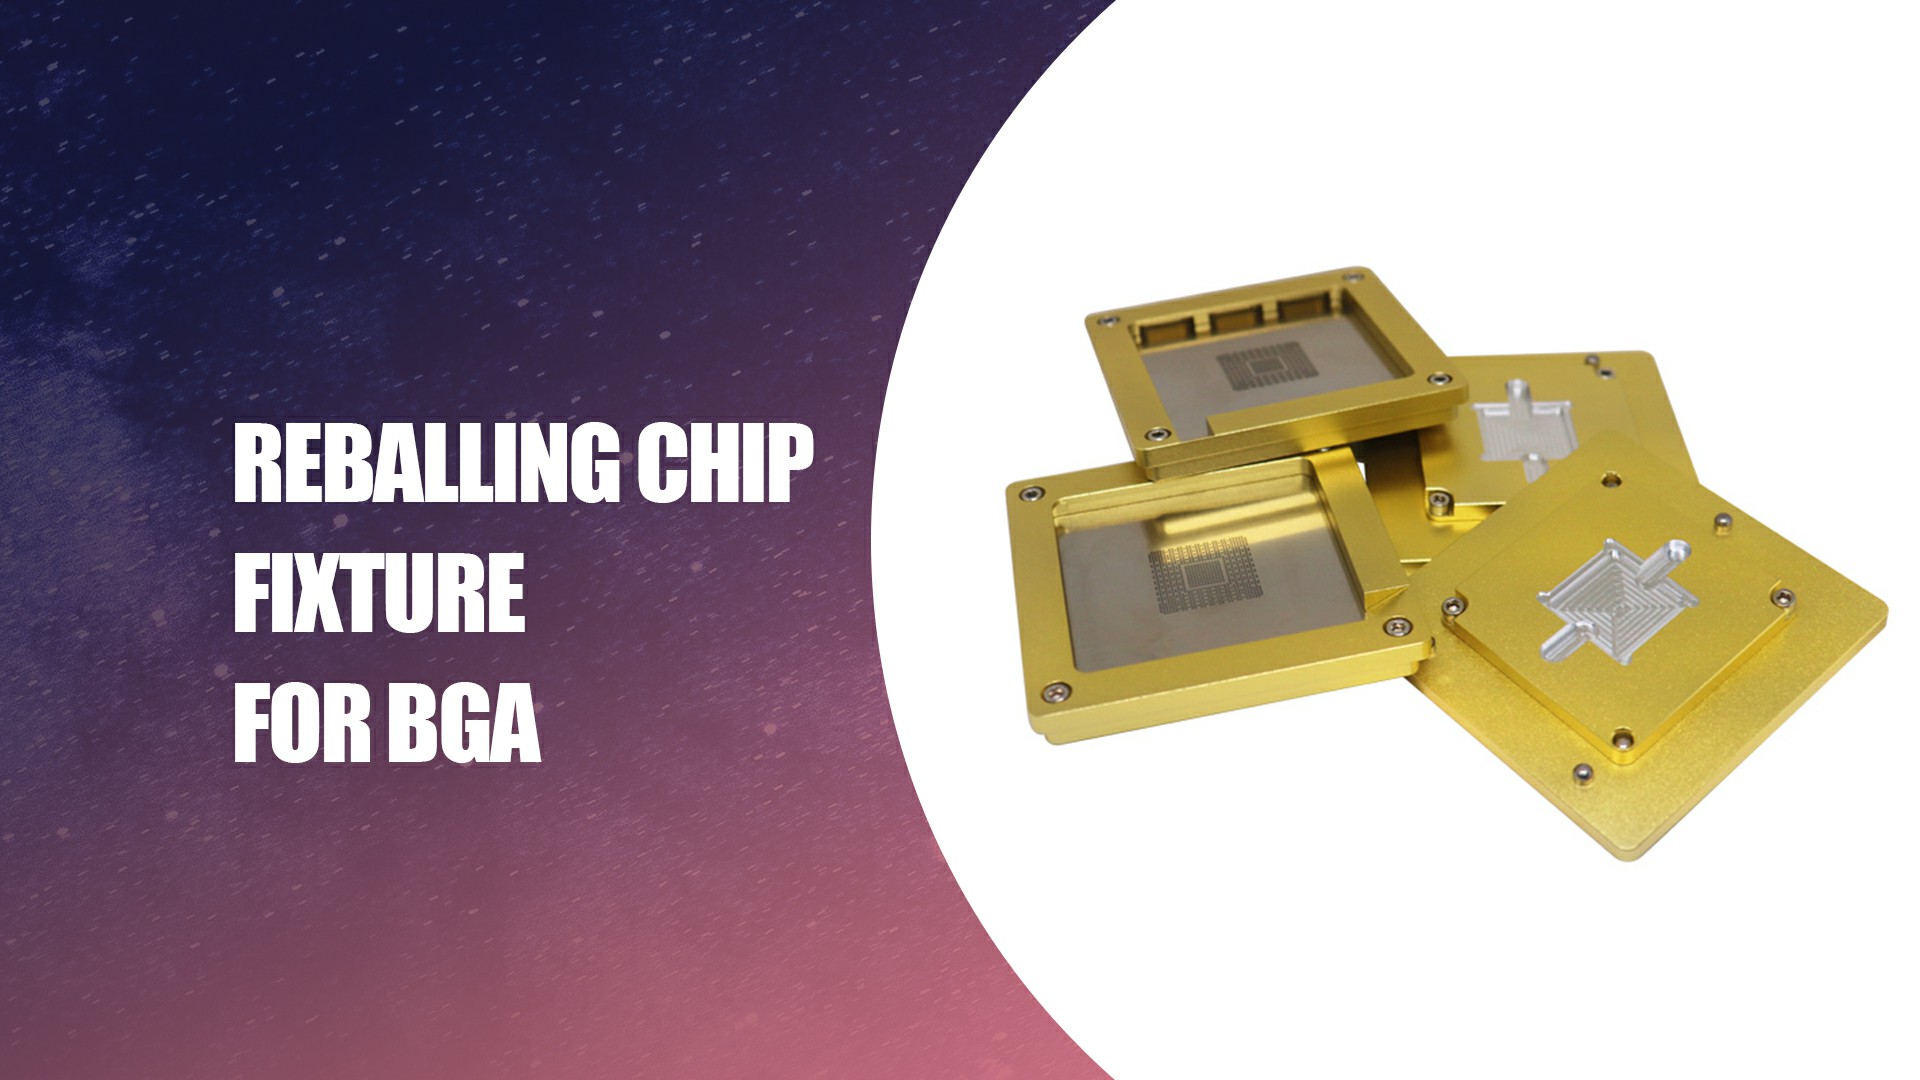 Miglior dispositivo per chip di reballing per la società BGA - Dataifeng